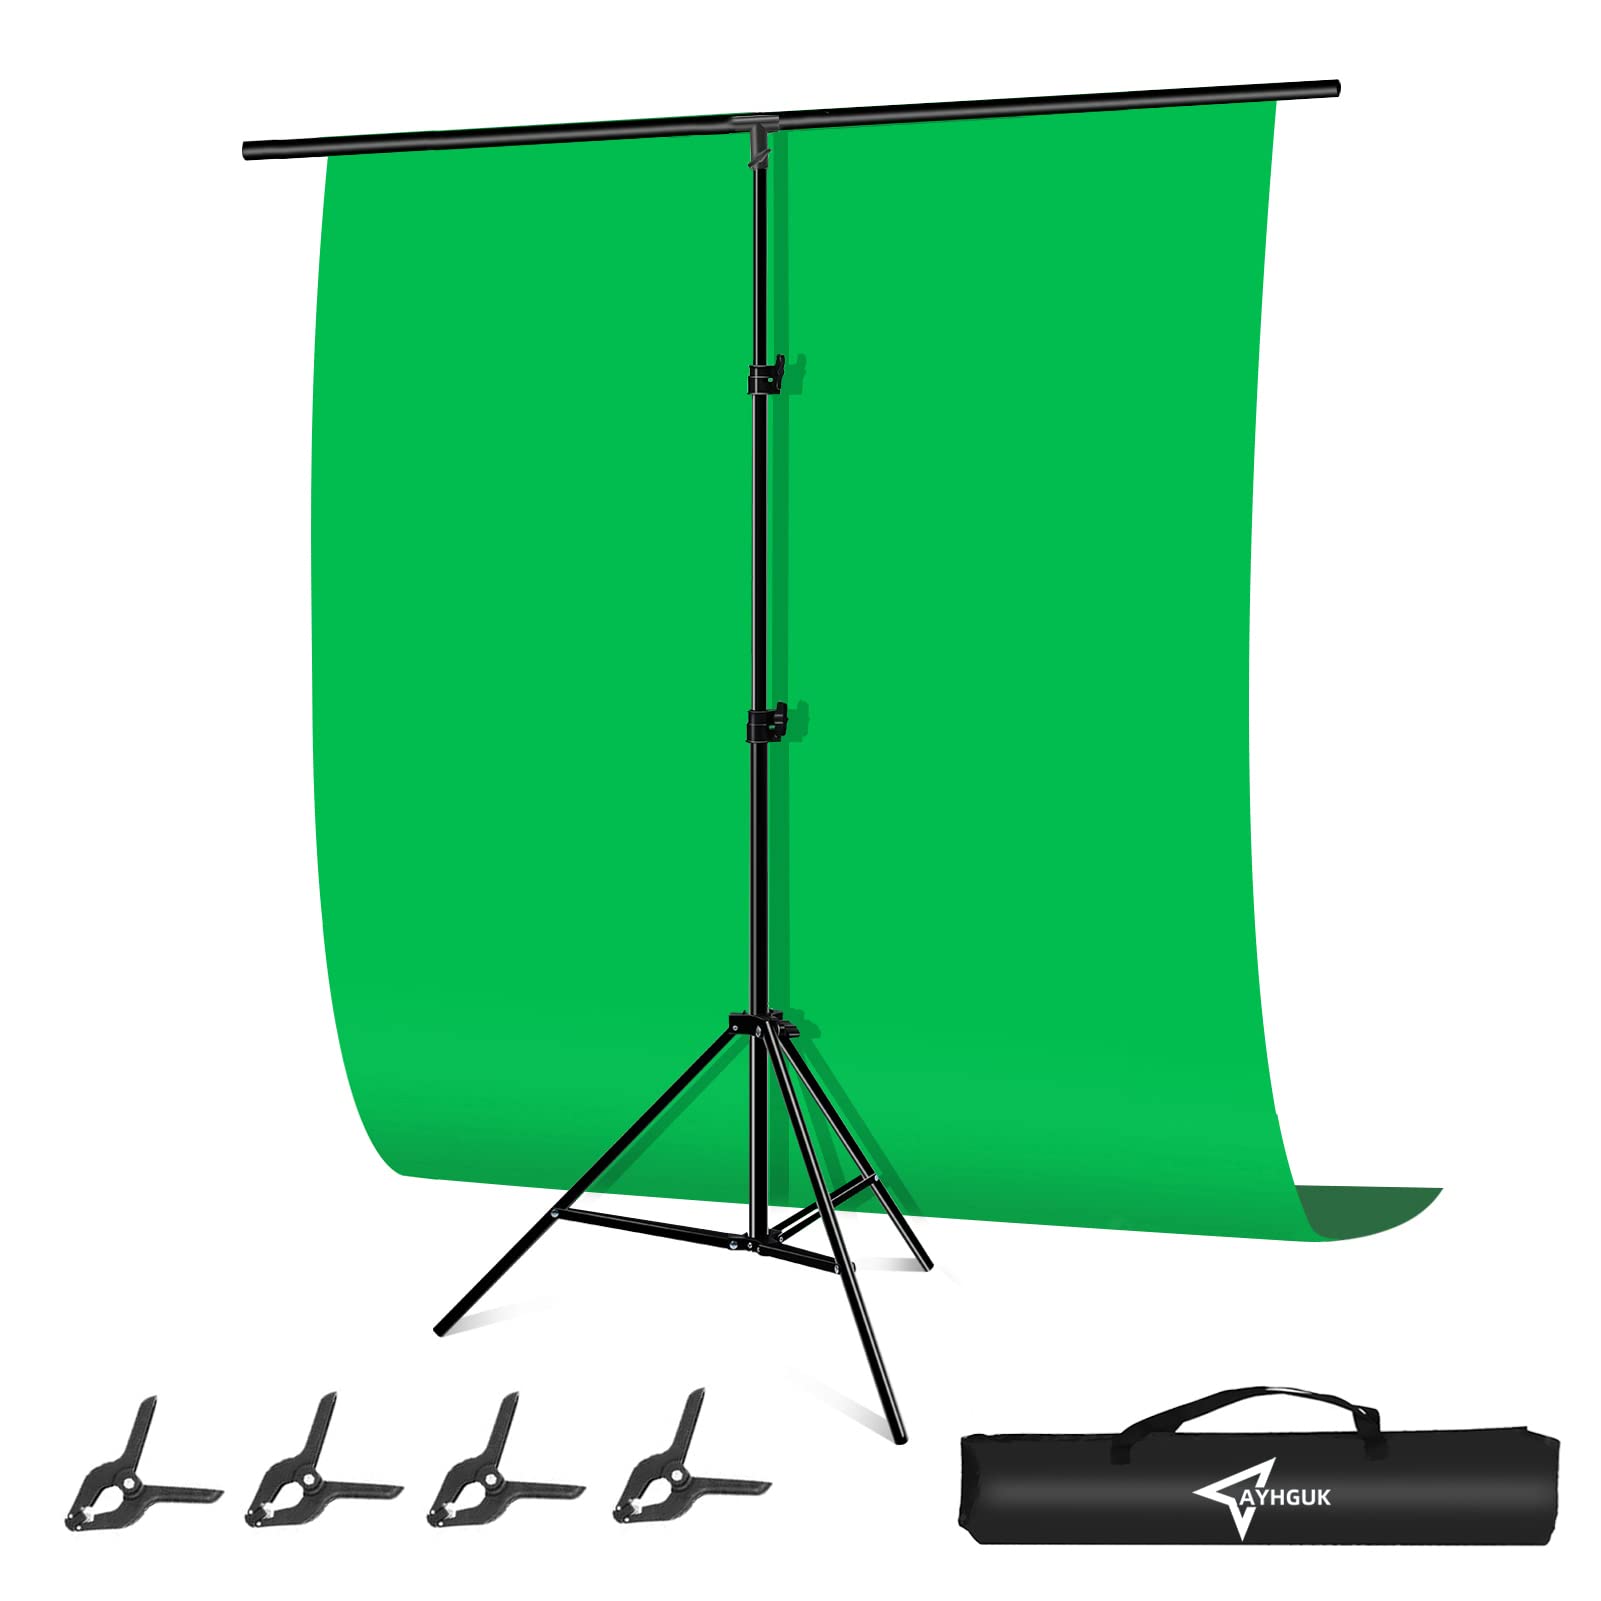 Green Back Background Stand là một trong những phụ kiện quan trọng để có được bức ảnh hoàn hảo. Với chất lượng và độ bền cao, Green Back Background Stand là sự lựa chọn hoàn hảo cho các nhiếp ảnh gia chuyên nghiệp. Xem hình ảnh liên quan đến keyword này để khám phá thêm nhiều tính năng hấp dẫn.